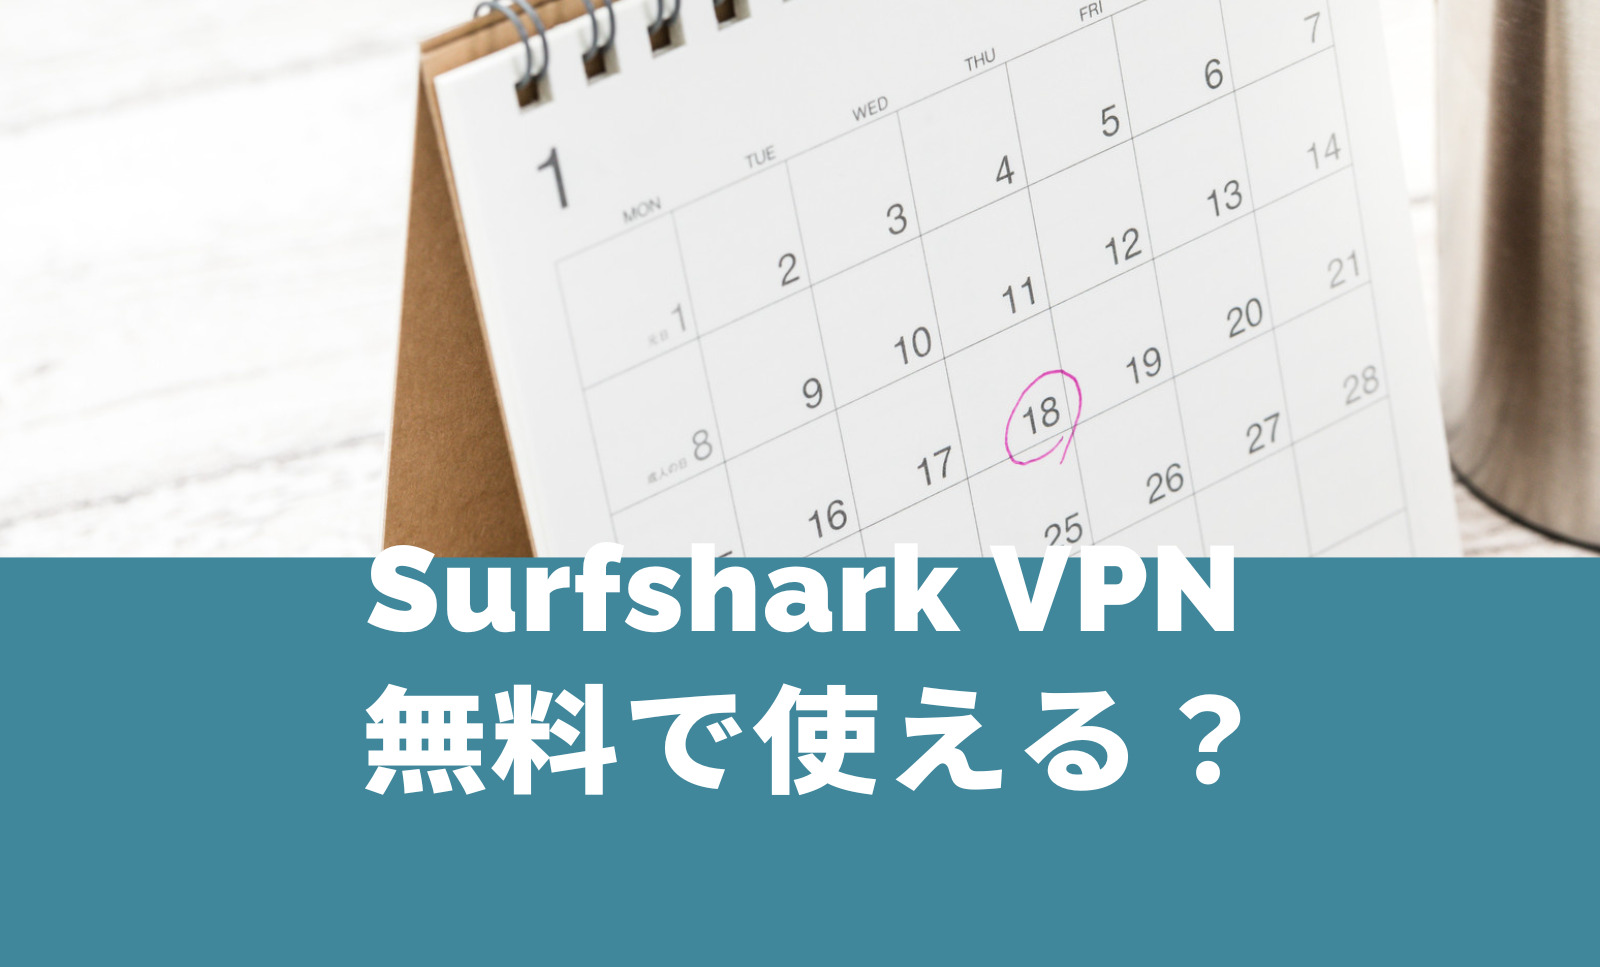 Surfshark VPNは無料で使える？お試しトライアル体験期間はある？のサムネイル画像